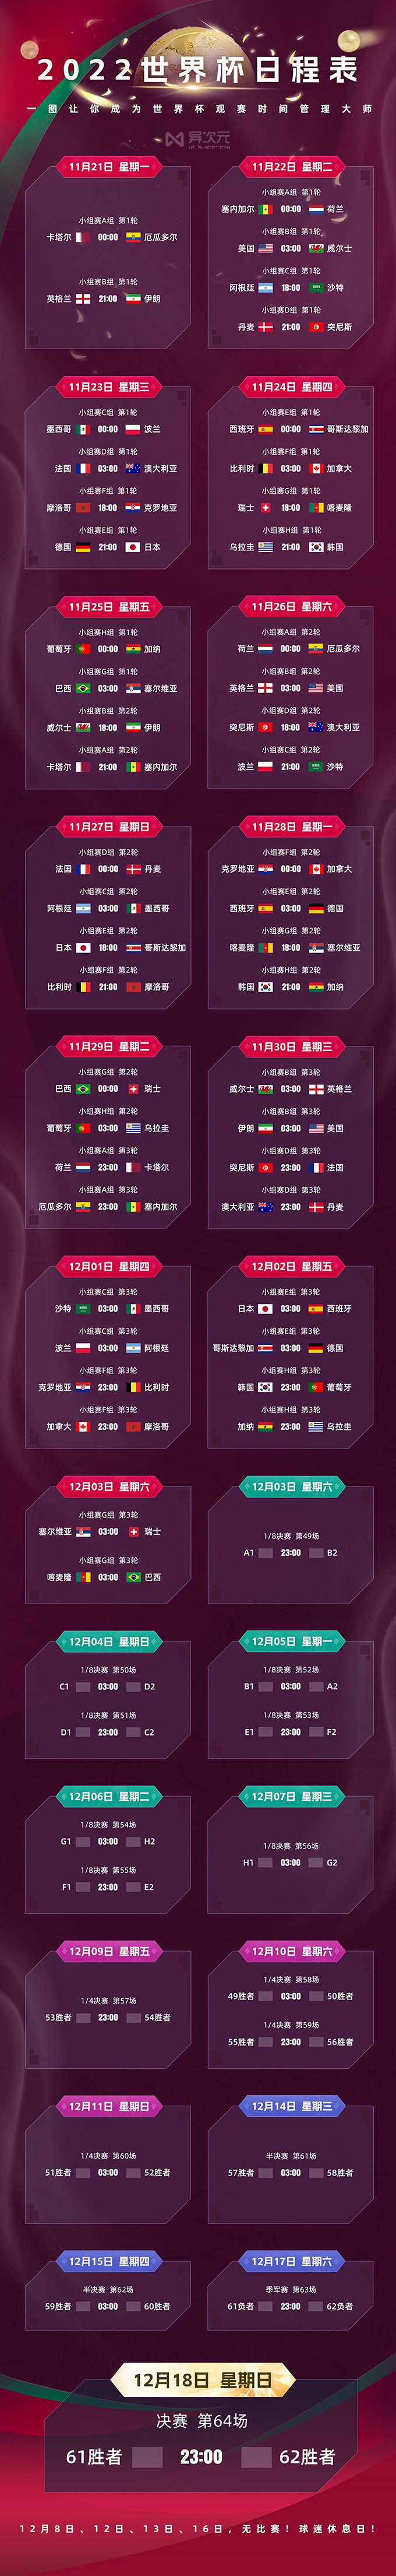 【世界杯】⚽️2022卡塔尔世界杯赛事直播⚽️[附赛程表] 体育 第2张